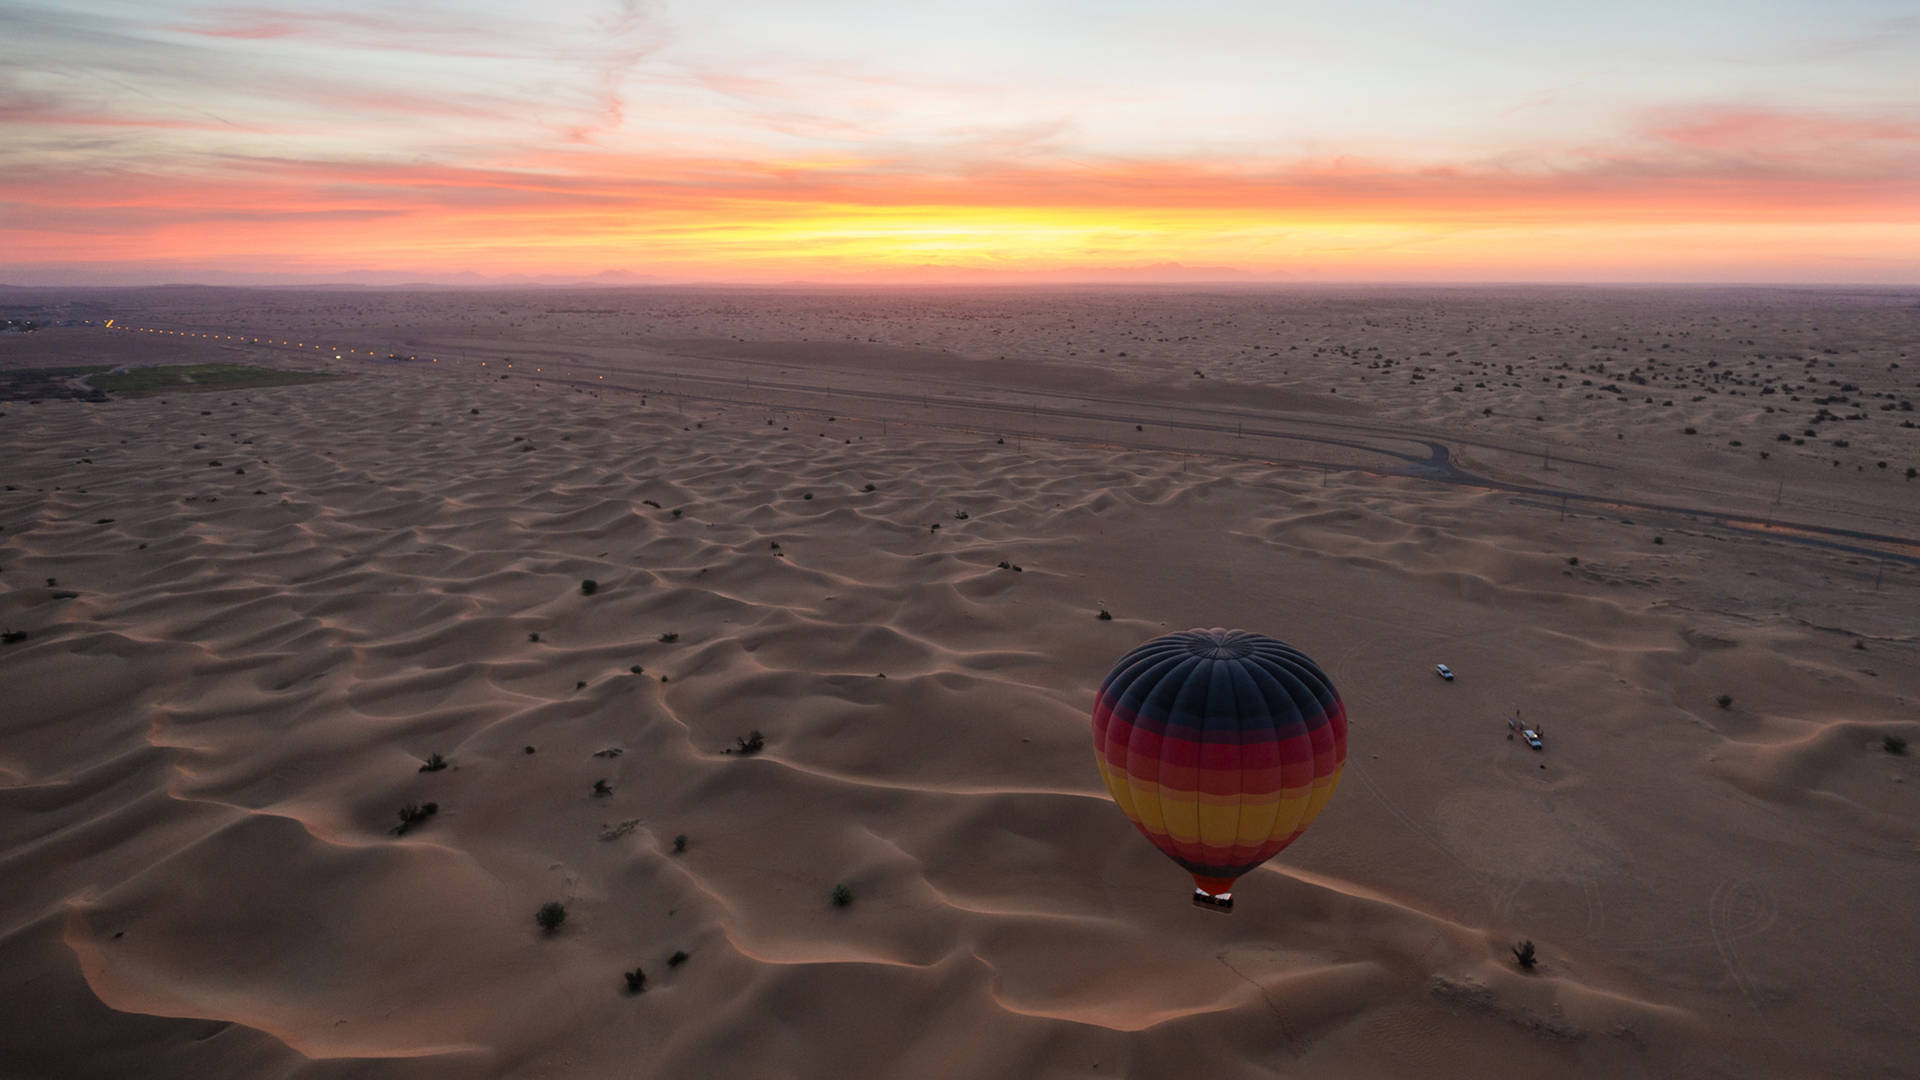 Hot air balloon over the Dubai desert